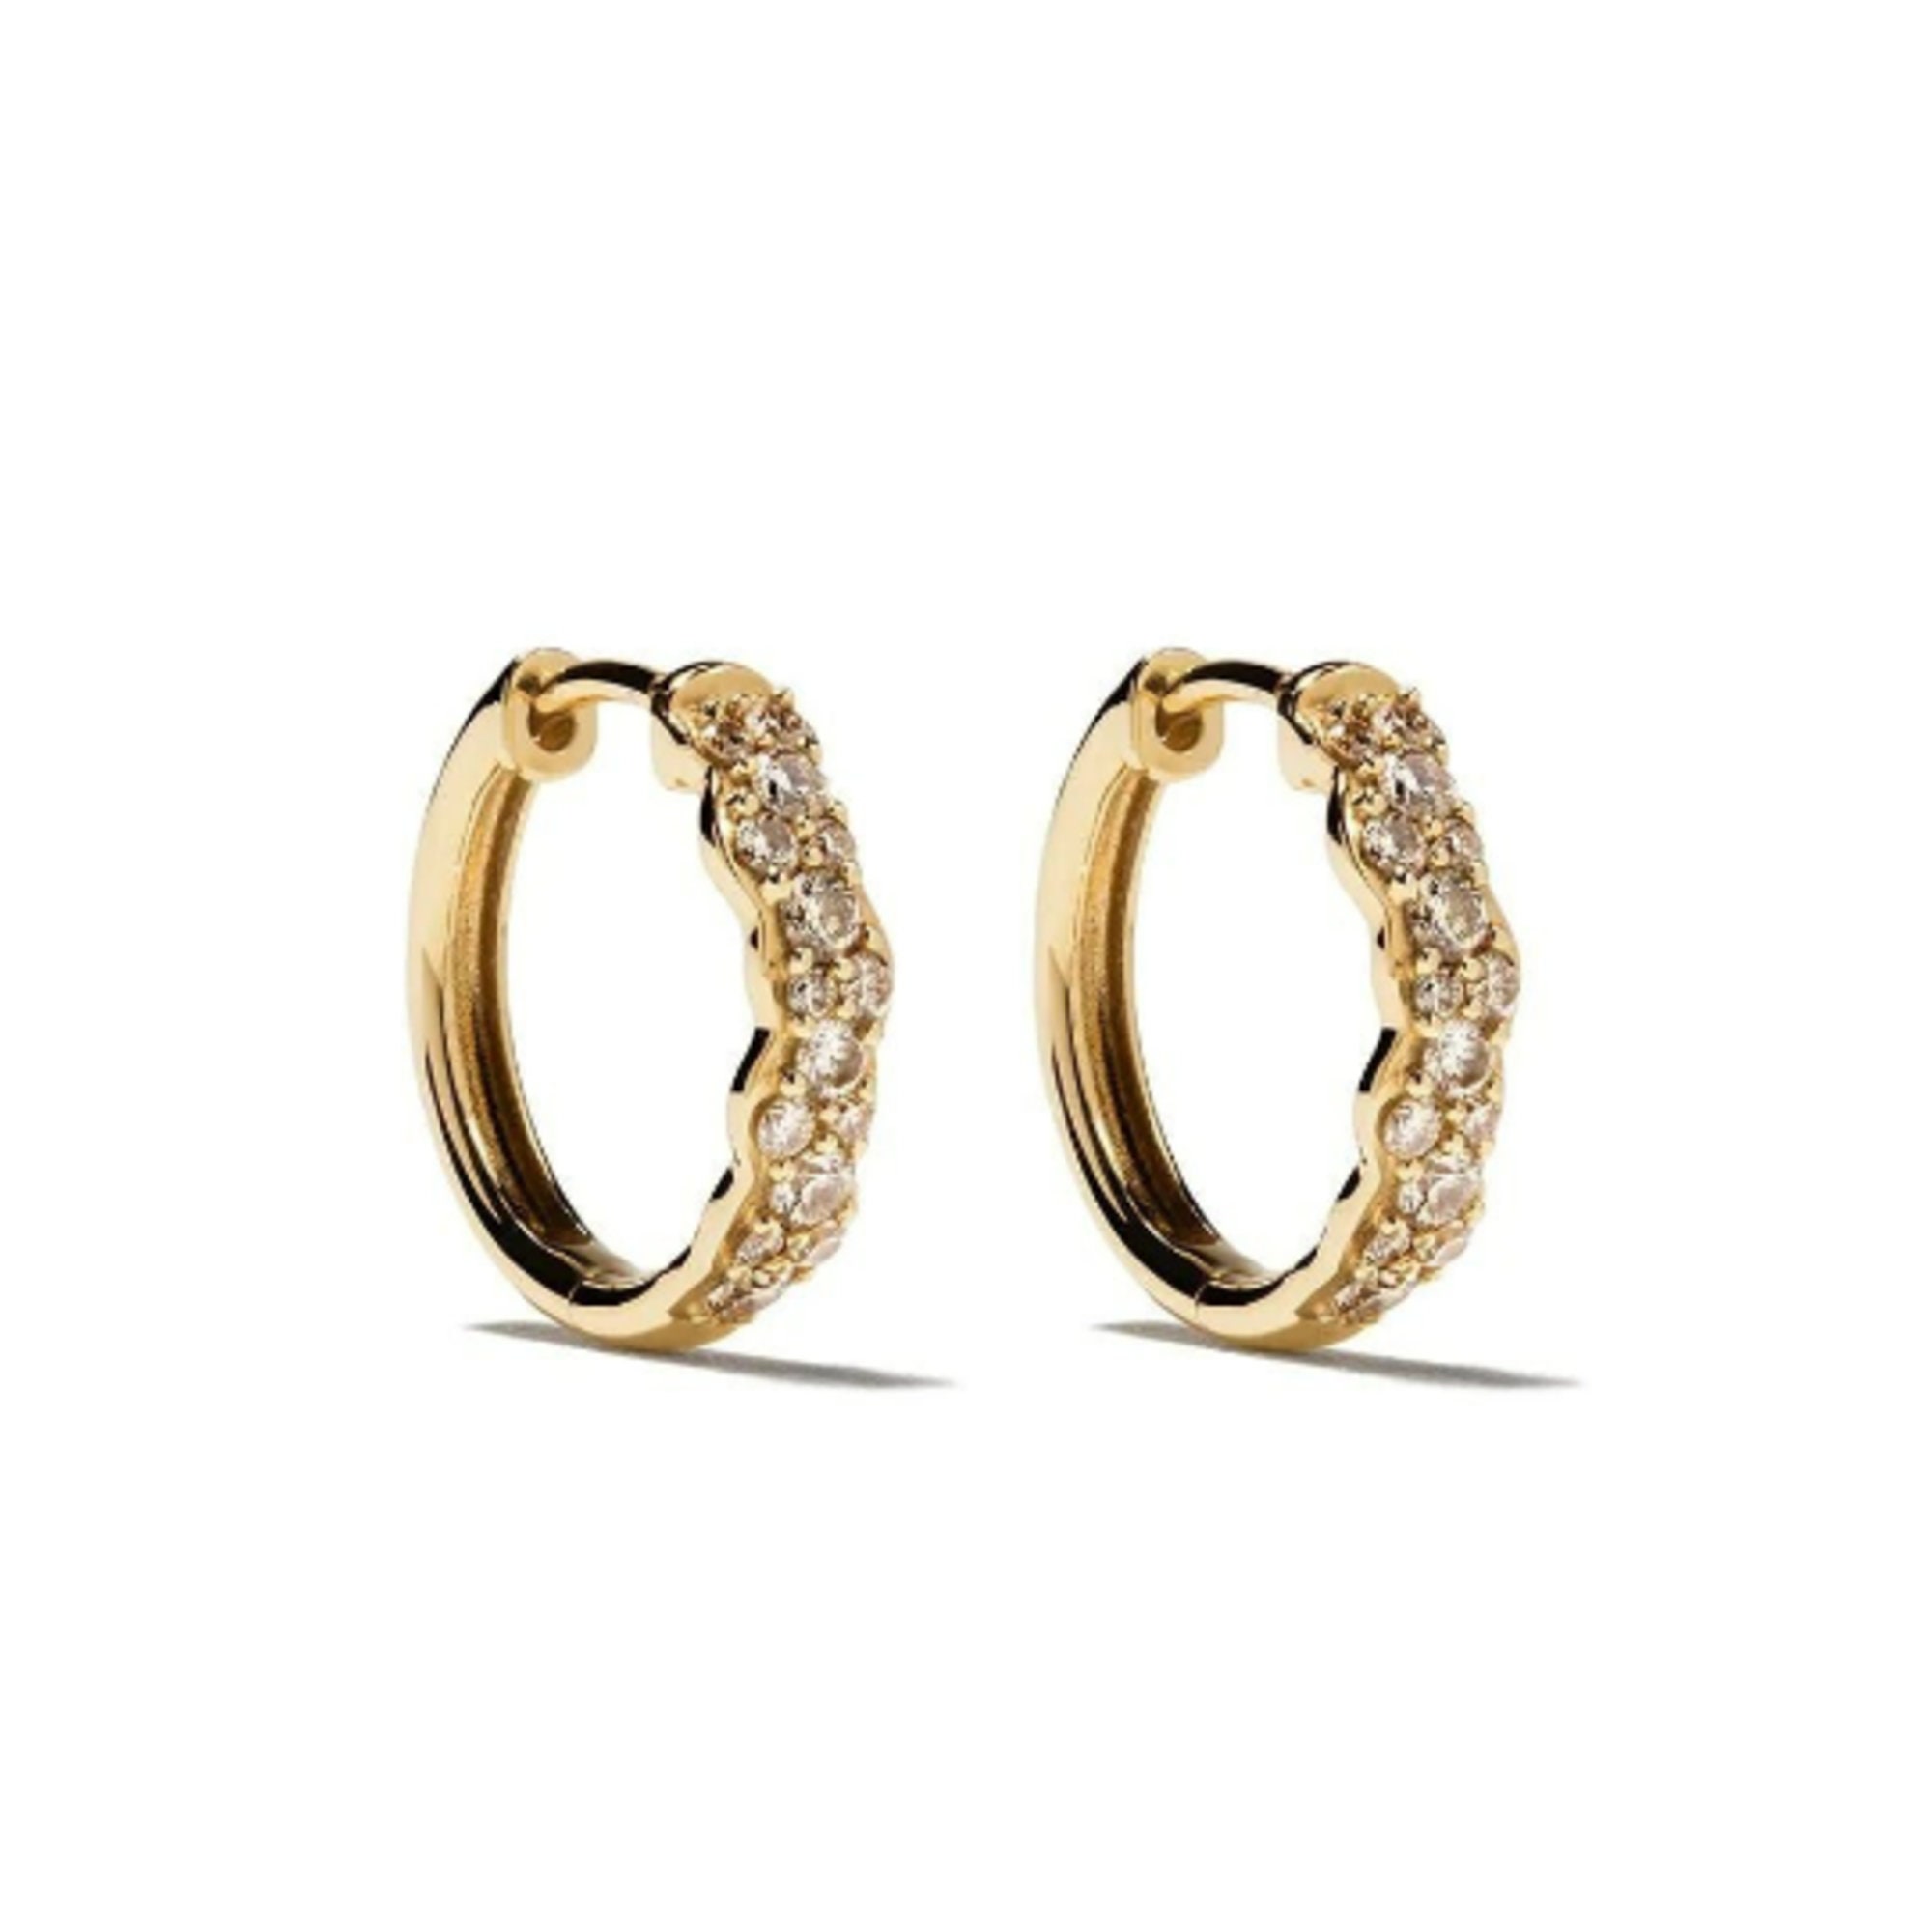 Buy Real Gold Design One Gram Gold Ring Type Bali Earrings for Women